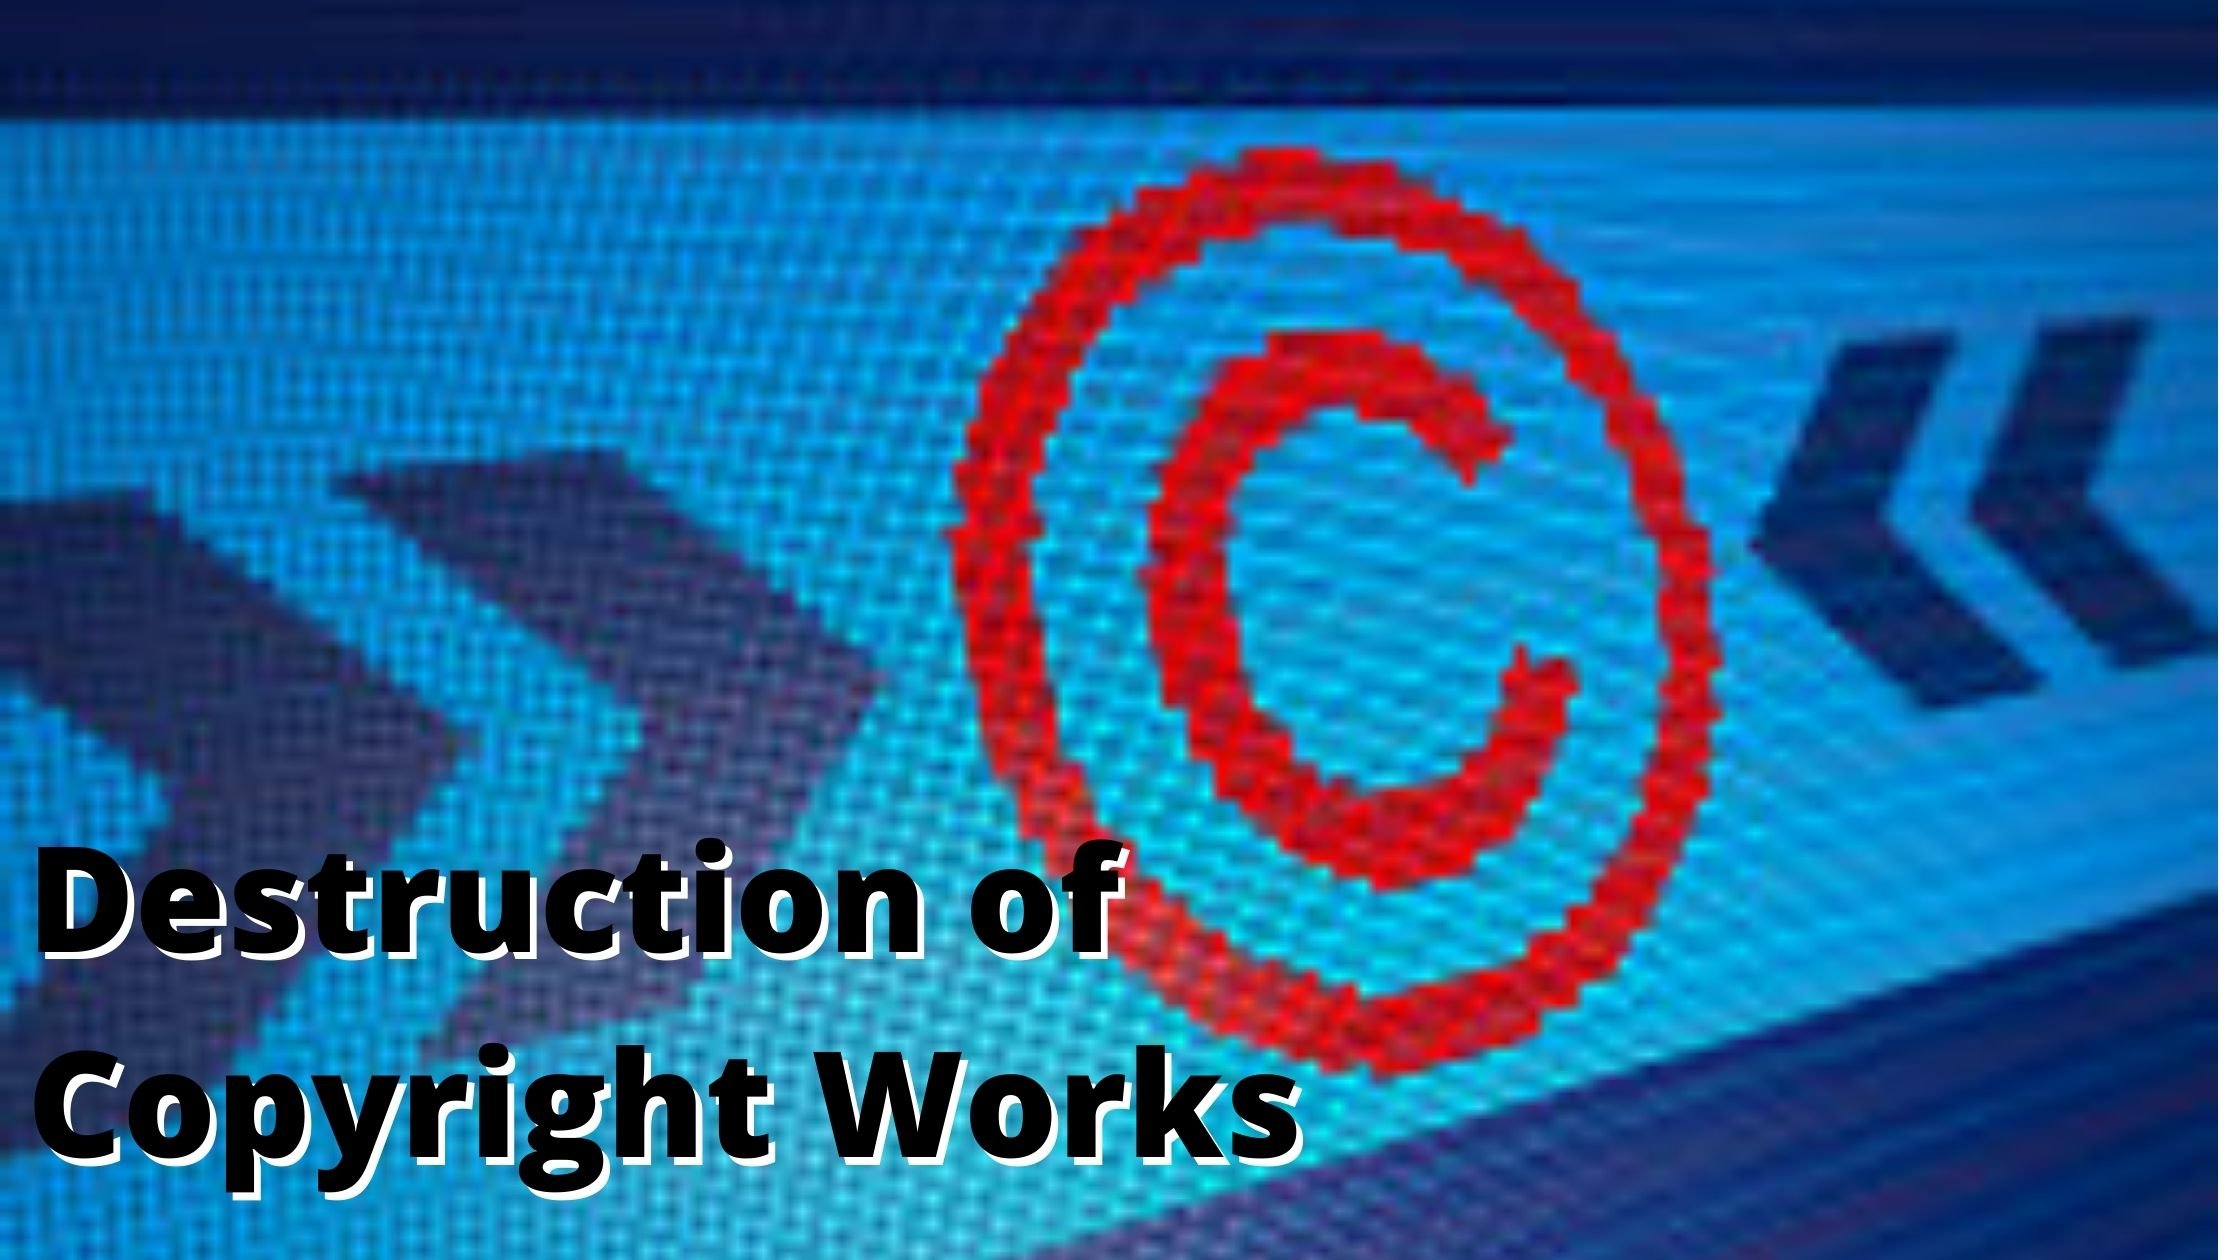 Destruction of Copyrighted Works